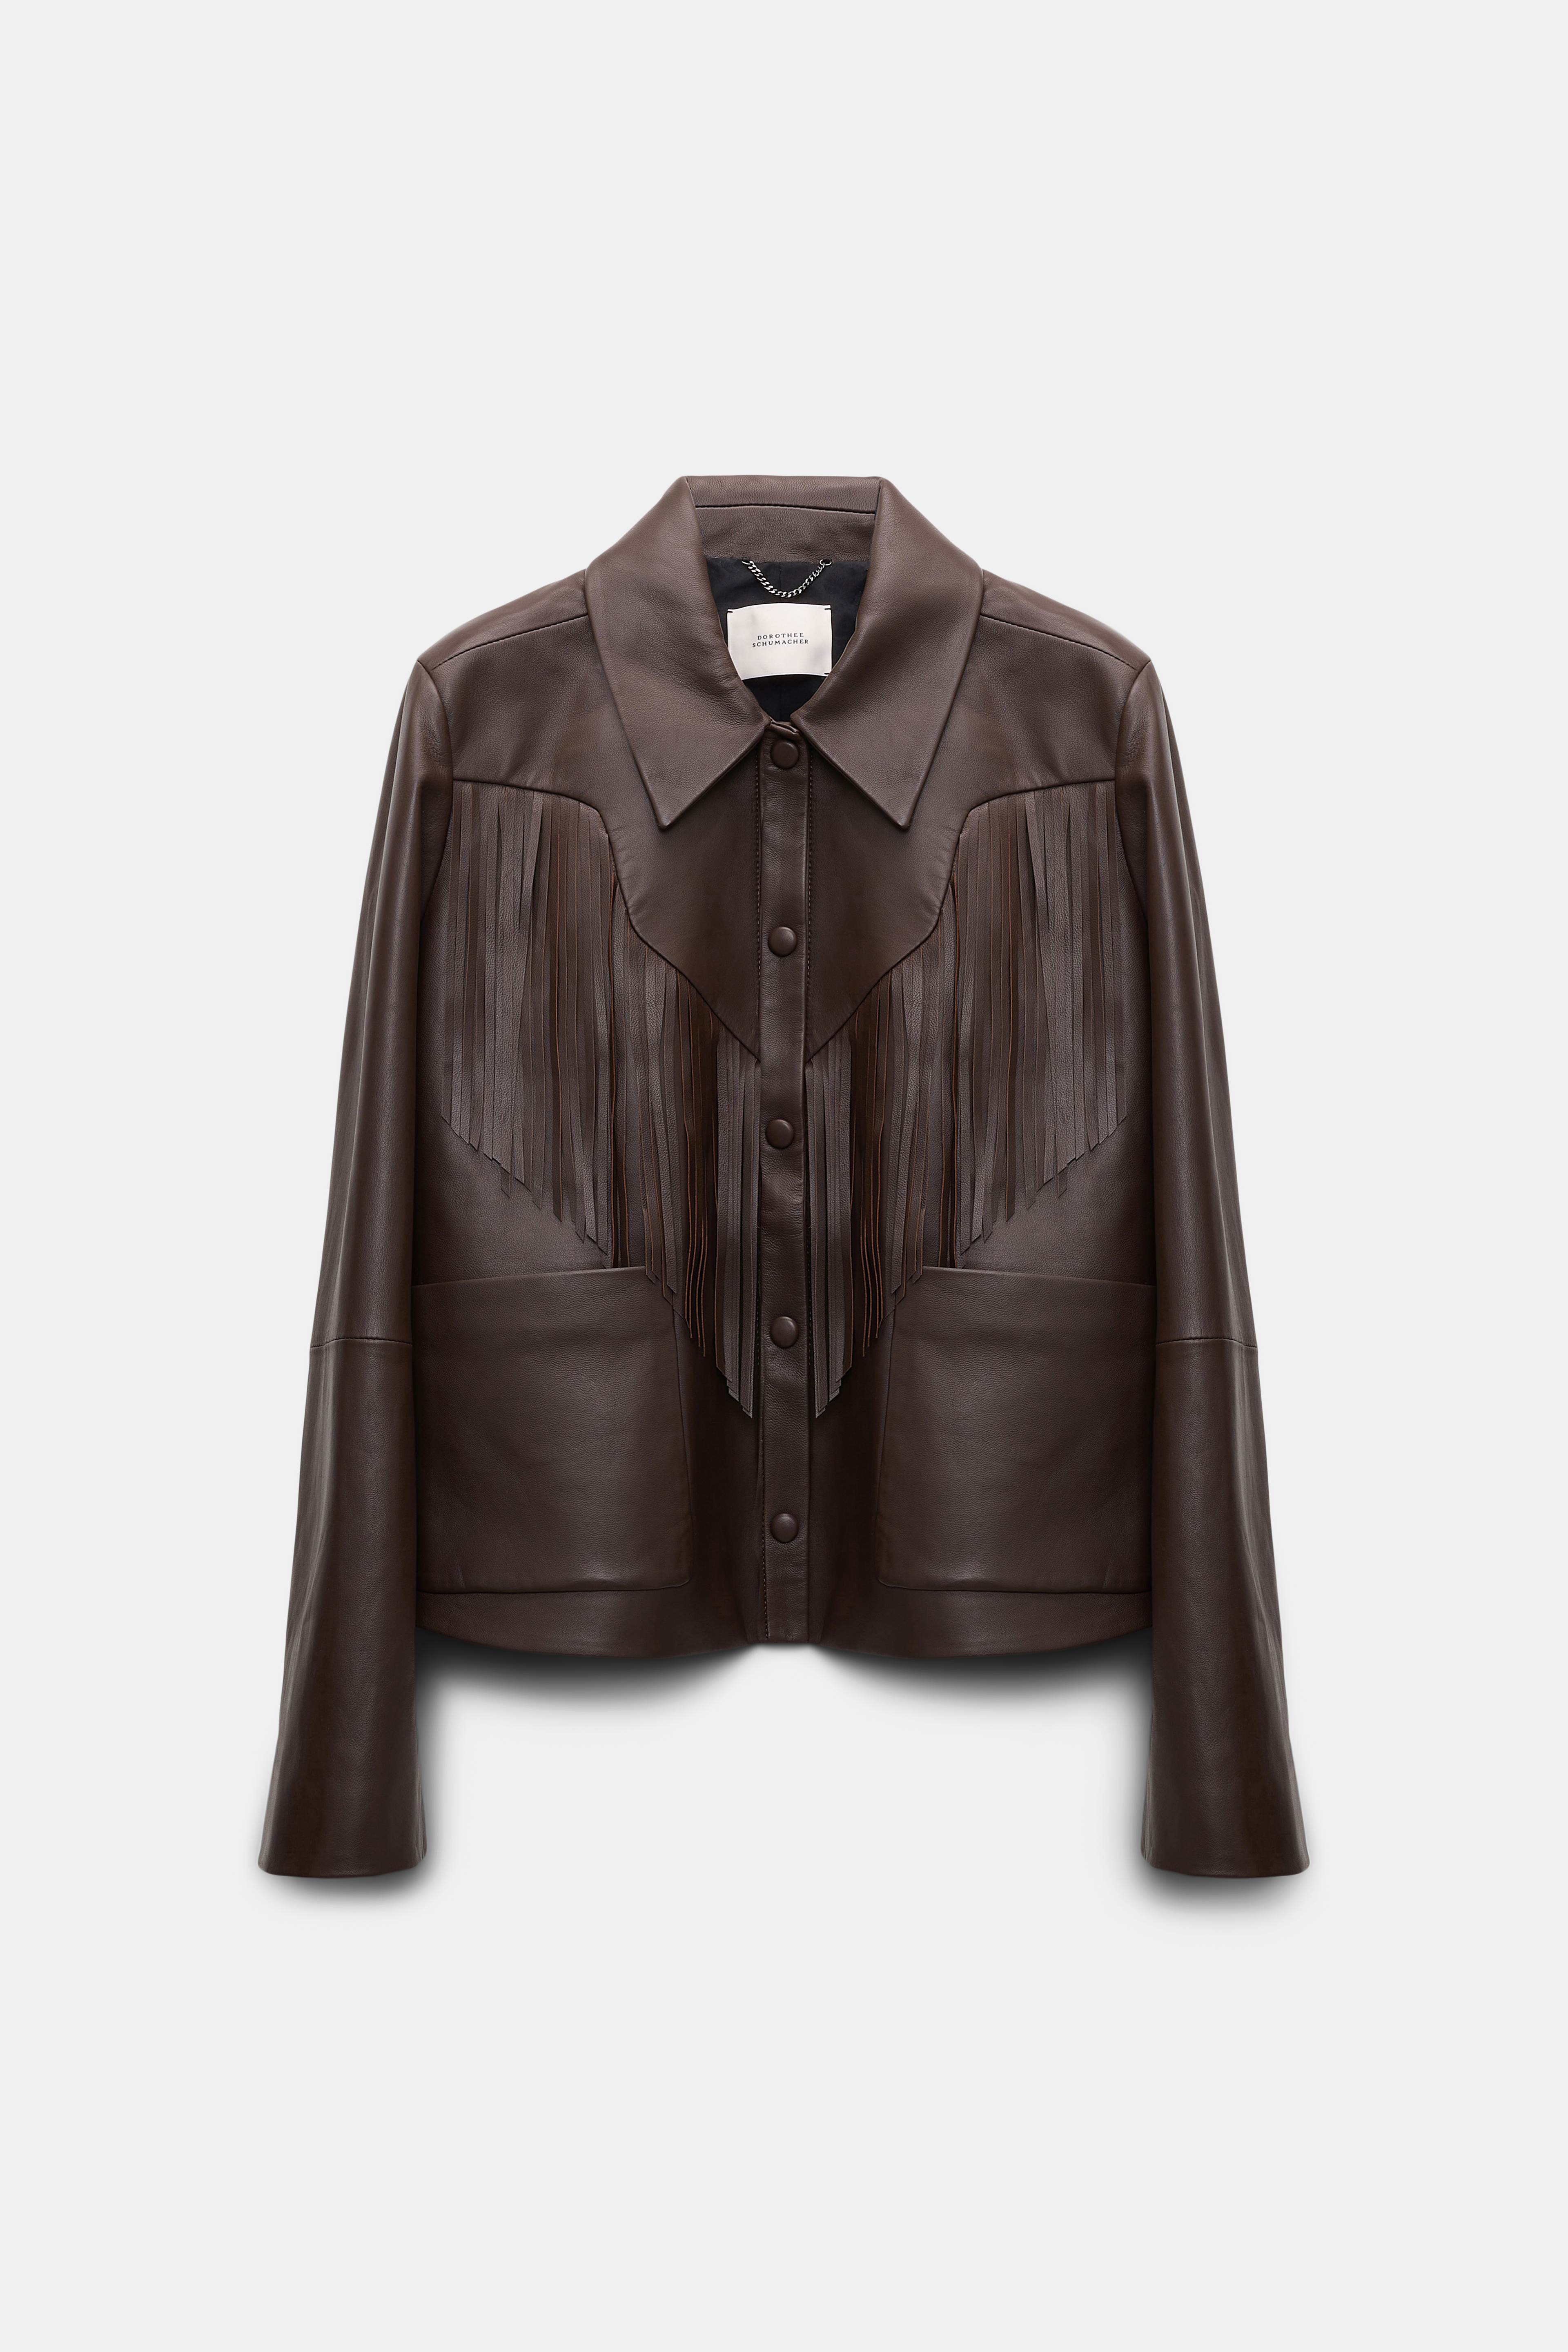 Jackets u0026 Coats | DOROTHEE SCHUMACHER - Official Online Store